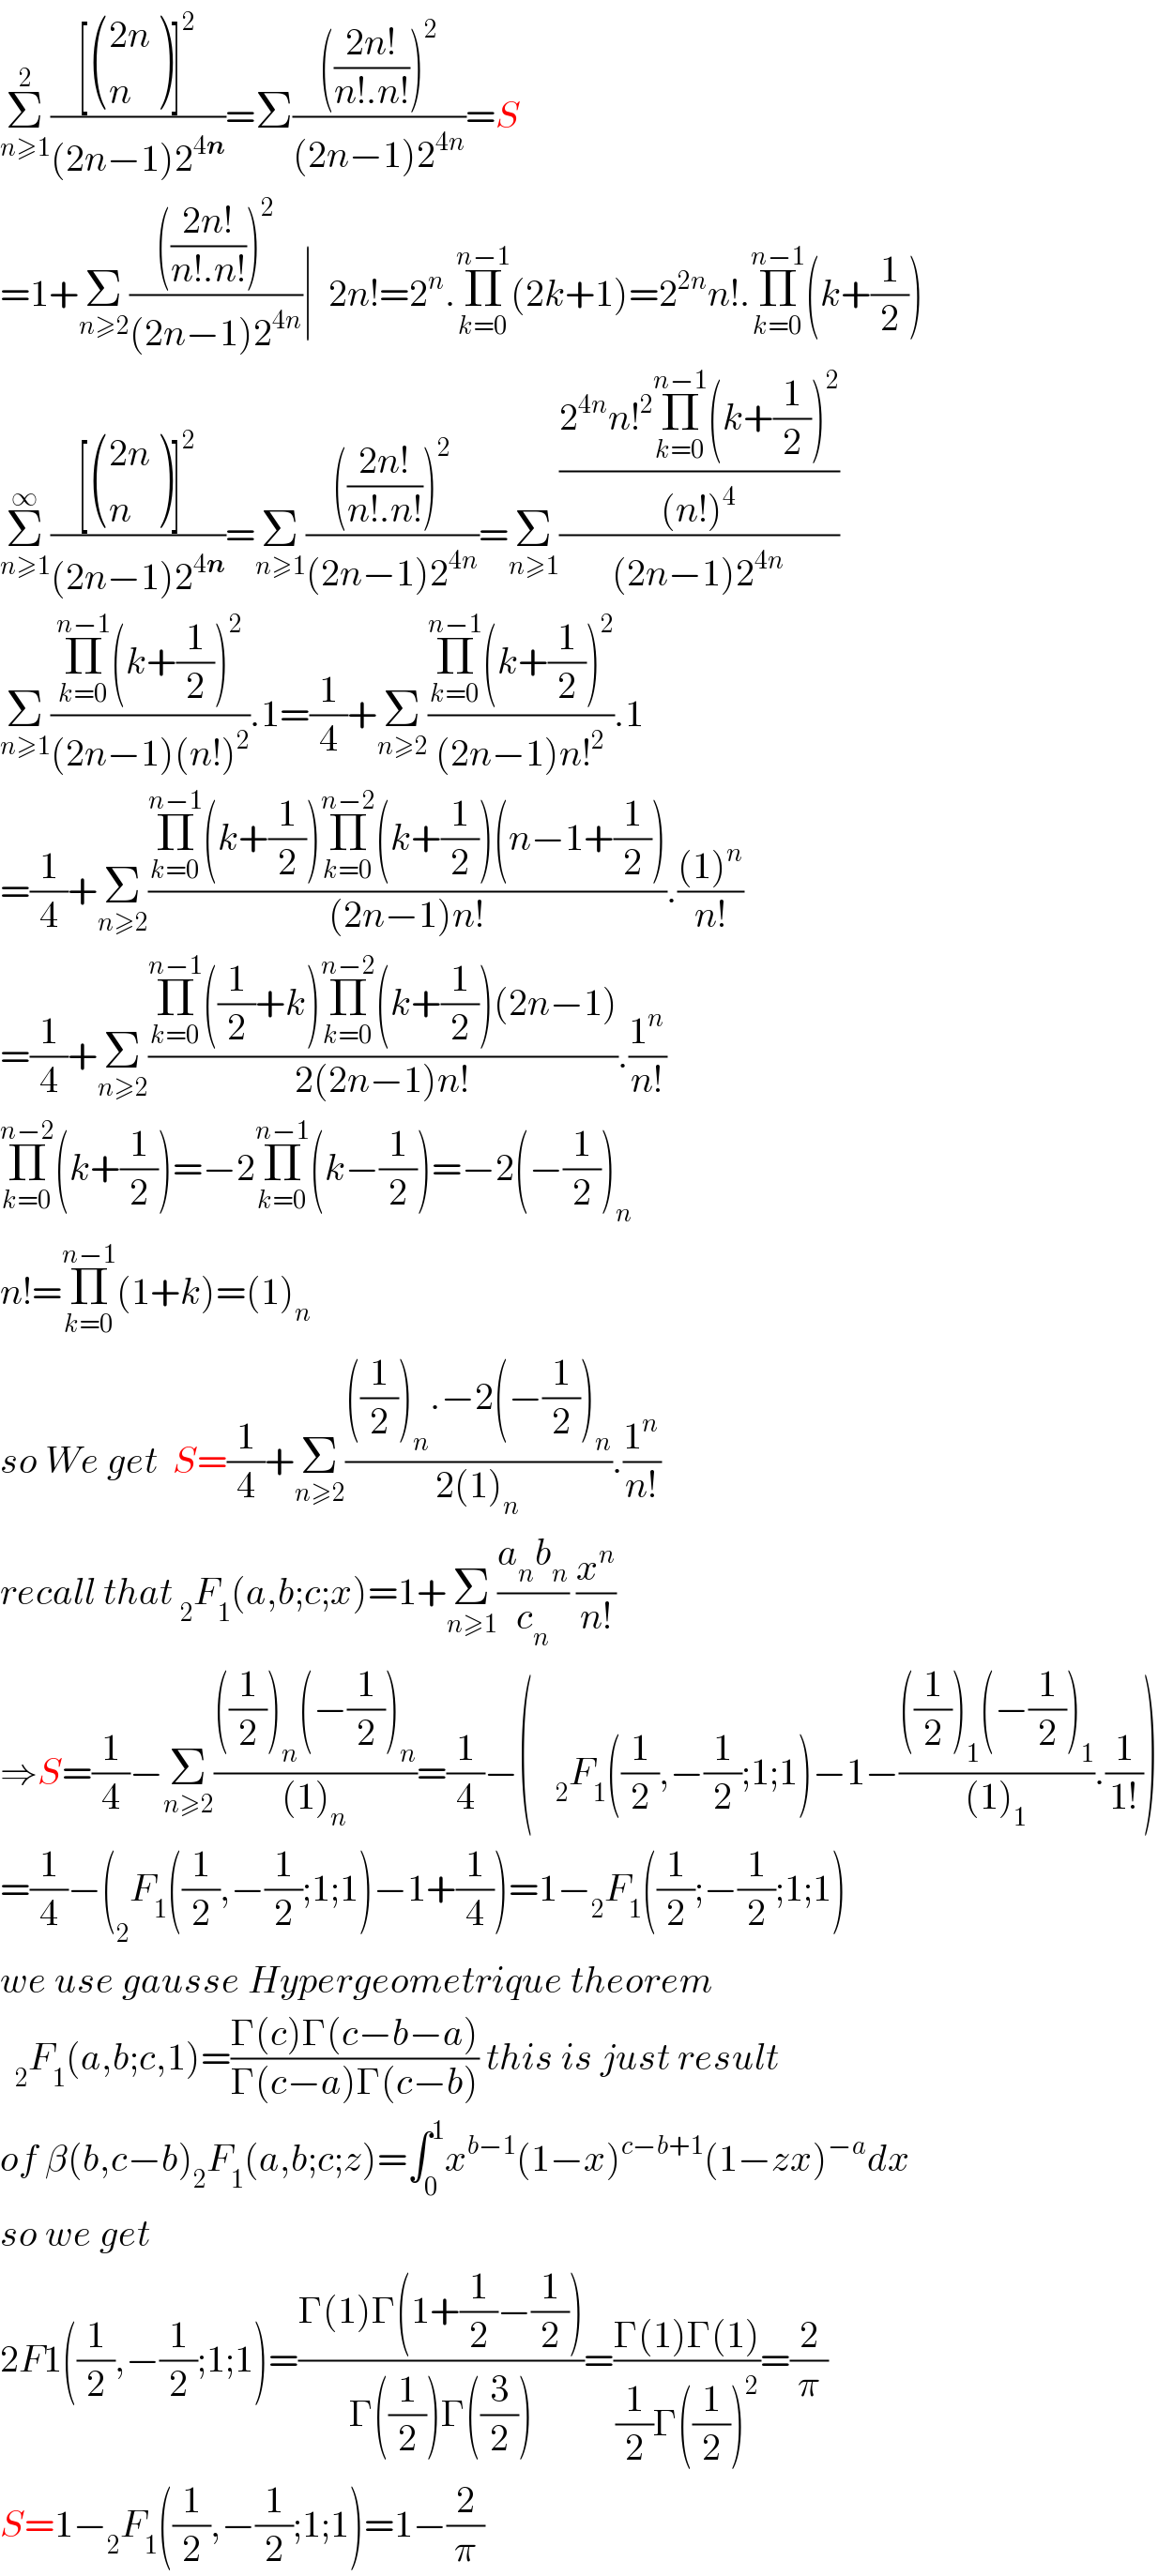 Σ_(n≥1) ^2 (([ (((2n)),(n) )]^2 )/((2n−1)2^(4n) ))=Σ(((((2n!)/(n!.n!)))^2 )/((2n−1)2^(4n) ))=S  =1+Σ_(n≥2) (((((2n!)/(n!.n!)))^2 )/((2n−1)2^(4n) ))∣  2n!=2^n .Π_(k=0) ^(n−1) (2k+1)=2^(2n) n!.Π_(k=0) ^(n−1) (k+(1/2))  Σ_(n≥1) ^∞ (([ (((2n)),(n) )]^2 )/((2n−1)2^(4n) ))=Σ_(n≥1) (((((2n!)/(n!.n!)))^2 )/((2n−1)2^(4n) ))=Σ_(n≥1) (((2^(4n) n!^2 Π_(k=0) ^(n−1) (k+(1/2))^2 )/((n!)^4 ))/((2n−1)2^(4n) ))  Σ_(n≥1) ((Π_(k=0) ^(n−1) (k+(1/2))^2 )/((2n−1)(n!)^2 )).1=(1/4)+Σ_(n≥2) ((Π_(k=0) ^(n−1) (k+(1/2))^2 )/((2n−1)n!^2 )).1  =(1/4)+Σ_(n≥2) ((Π_(k=0) ^(n−1) (k+(1/2))Π_(k=0) ^(n−2) (k+(1/2))(n−1+(1/2)))/((2n−1)n!)).(((1)^n )/(n!))  =(1/4)+Σ_(n≥2) ((Π_(k=0) ^(n−1) ((1/2)+k)Π_(k=0) ^(n−2) (k+(1/2))(2n−1))/(2(2n−1)n!)).(1^n /(n!))  Π_(k=0) ^(n−2) (k+(1/2))=−2Π_(k=0) ^(n−1) (k−(1/2))=−2(−(1/2))_n   n!=Π_(k=0) ^(n−1) (1+k)=(1)_n   so We get  S=(1/4)+Σ_(n≥2) ((((1/2))_n .−2(−(1/2))_n )/(2(1)_n )).(1^n /(n!))  recall that _2 F_1 (a,b;c;x)=1+Σ_(n≥1) ((a_n b_n )/c_n ) (x^n /(n!))  ⇒S=(1/4)−Σ_(n≥2) ((((1/2))_n (−(1/2))_n )/((1)_n ))=(1/4)−(   _2 F_1 ((1/2),−(1/2);1;1)−1−((((1/2))_1 (−(1/2))_1 )/((1)_1 )).(1/(1!)))  =(1/4)−(_2 F_1 ((1/2),−(1/2);1;1)−1+(1/4))=1−_2 F_1 ((1/2);−(1/2);1;1)  we use gausse Hypergeometrique theorem    _2 F_1 (a,b;c,1)=((Γ(c)Γ(c−b−a))/(Γ(c−a)Γ(c−b))) this is just result  of β(b,c−b)_2 F_1 (a,b;c;z)=∫_0 ^1 x^(b−1) (1−x)^(c−b+1) (1−zx)^(−a) dx  so we get  2F1((1/2),−(1/2);1;1)=((Γ(1)Γ(1+(1/2)−(1/2)))/(Γ((1/2))Γ((3/2))))=((Γ(1)Γ(1))/((1/2)Γ((1/2))^2 ))=(2/π)  S=1−_2 F_1 ((1/2),−(1/2);1;1)=1−(2/π)  